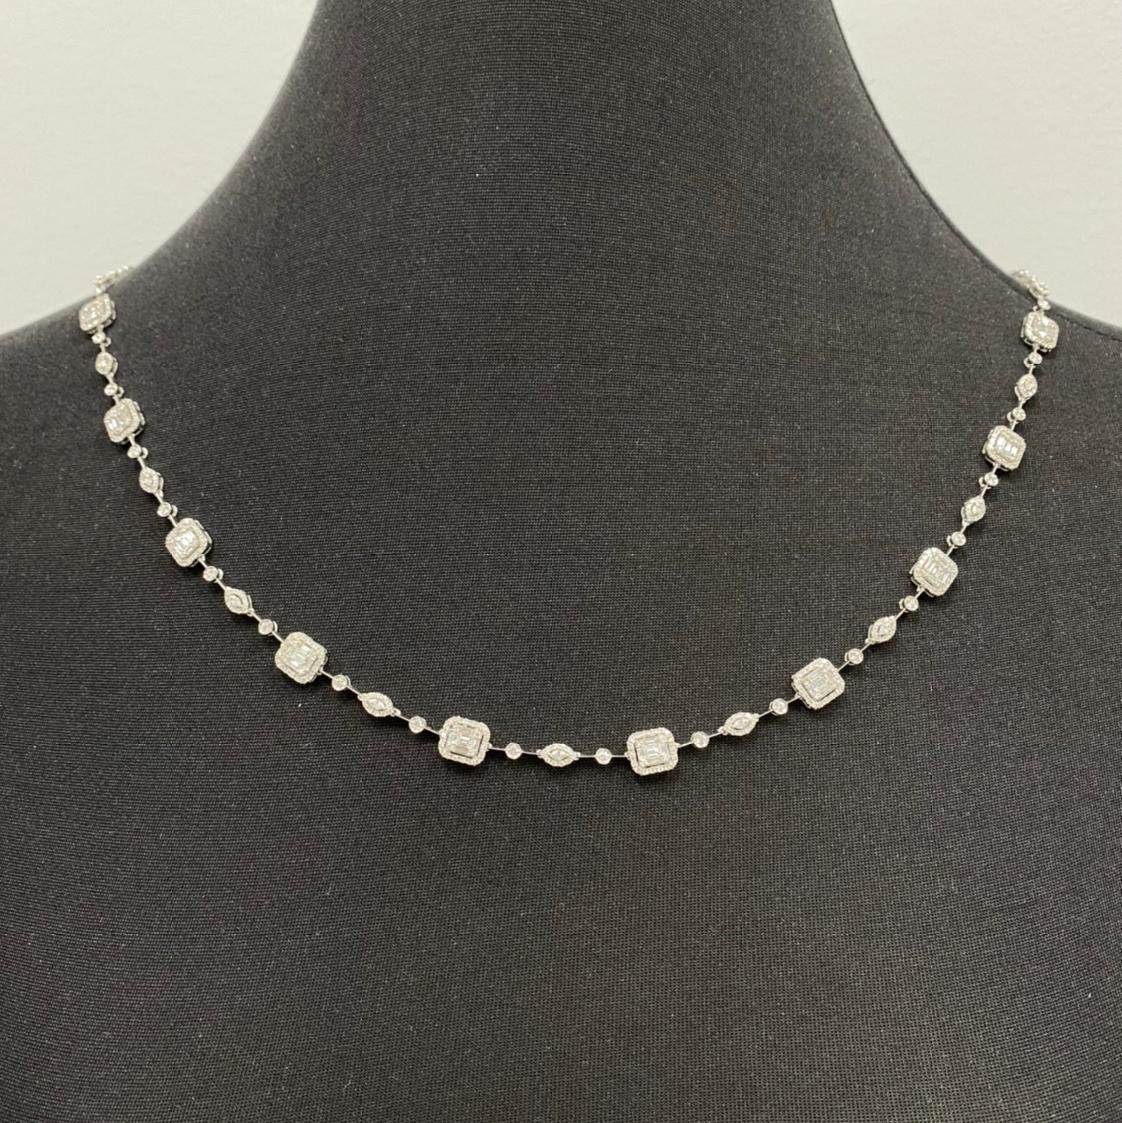 10.92 Carat Emerald Cut Cluster Diamond Illusion Necklace and Bracelet Set 2